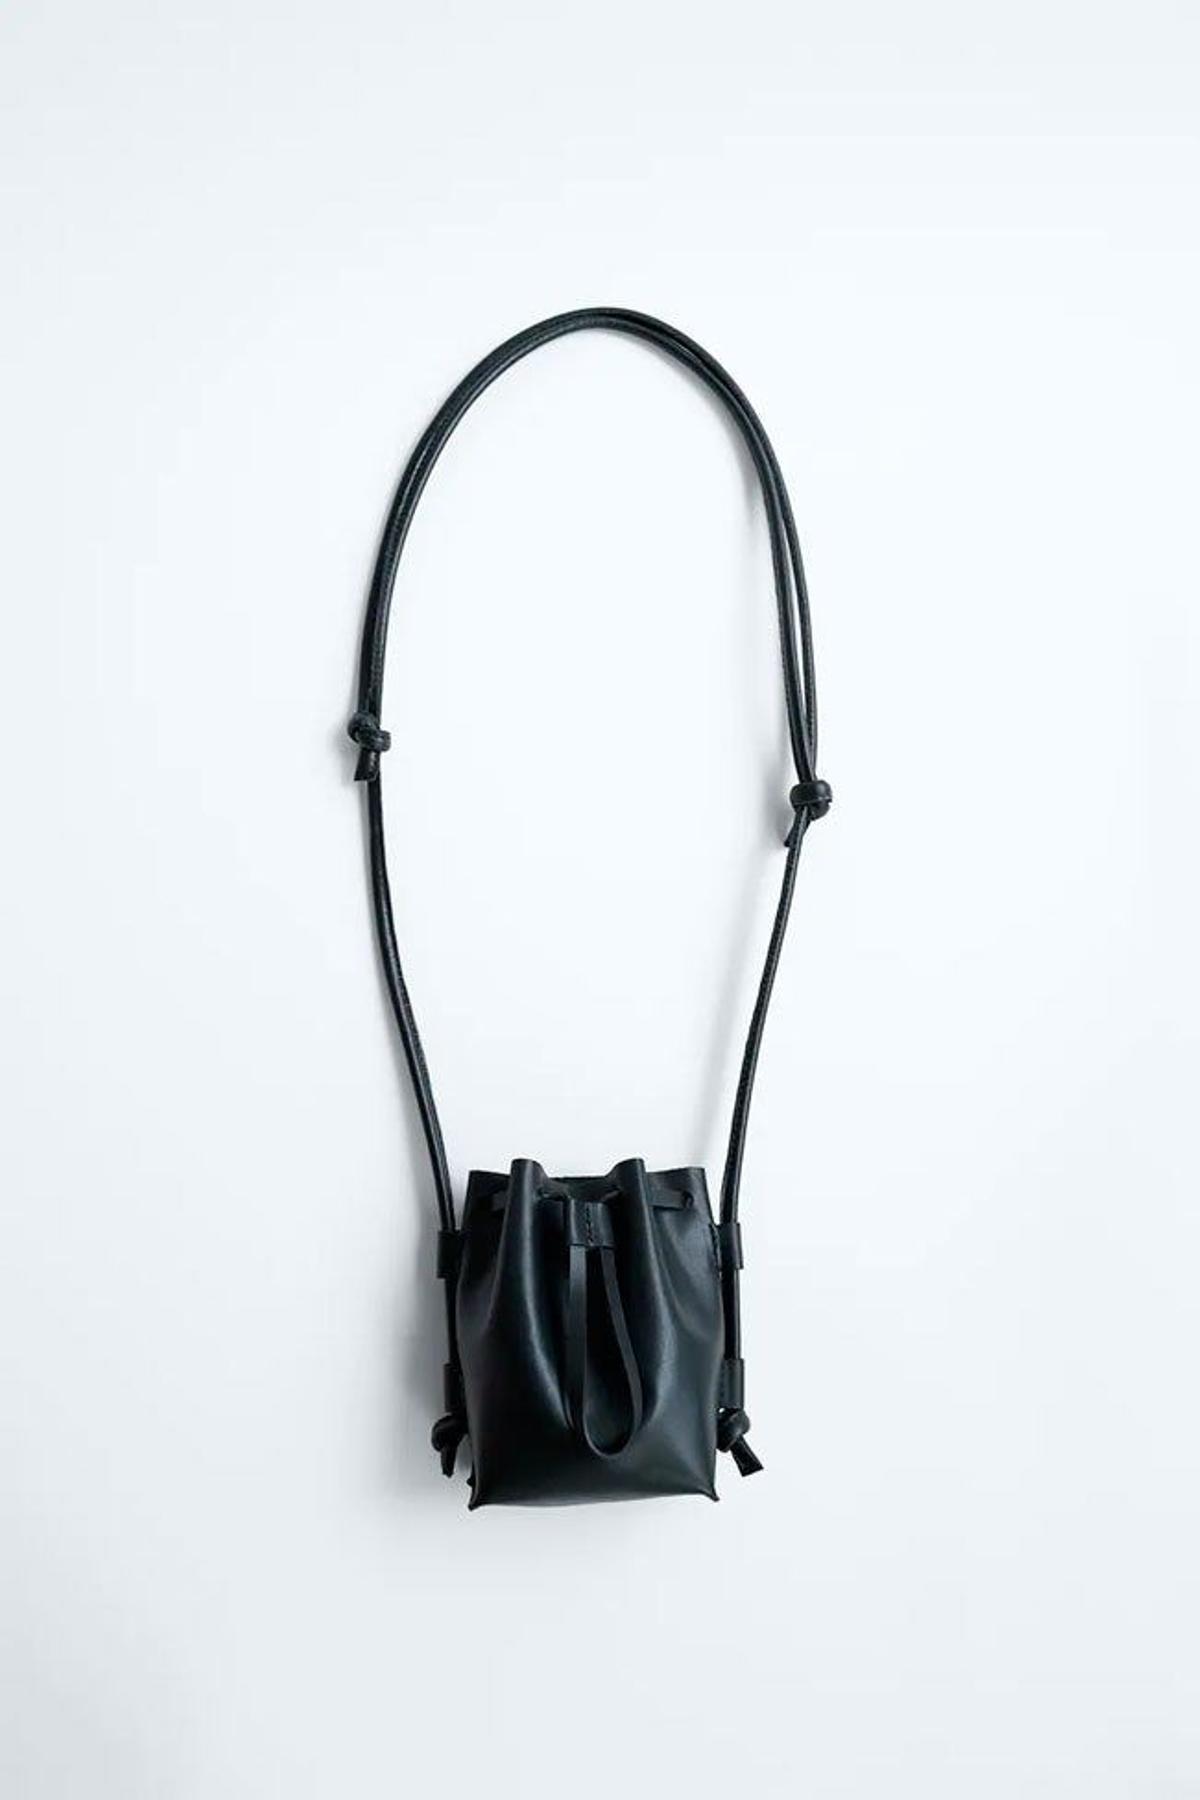 La colección Limited Edition de bolsos de Zara - Stilo